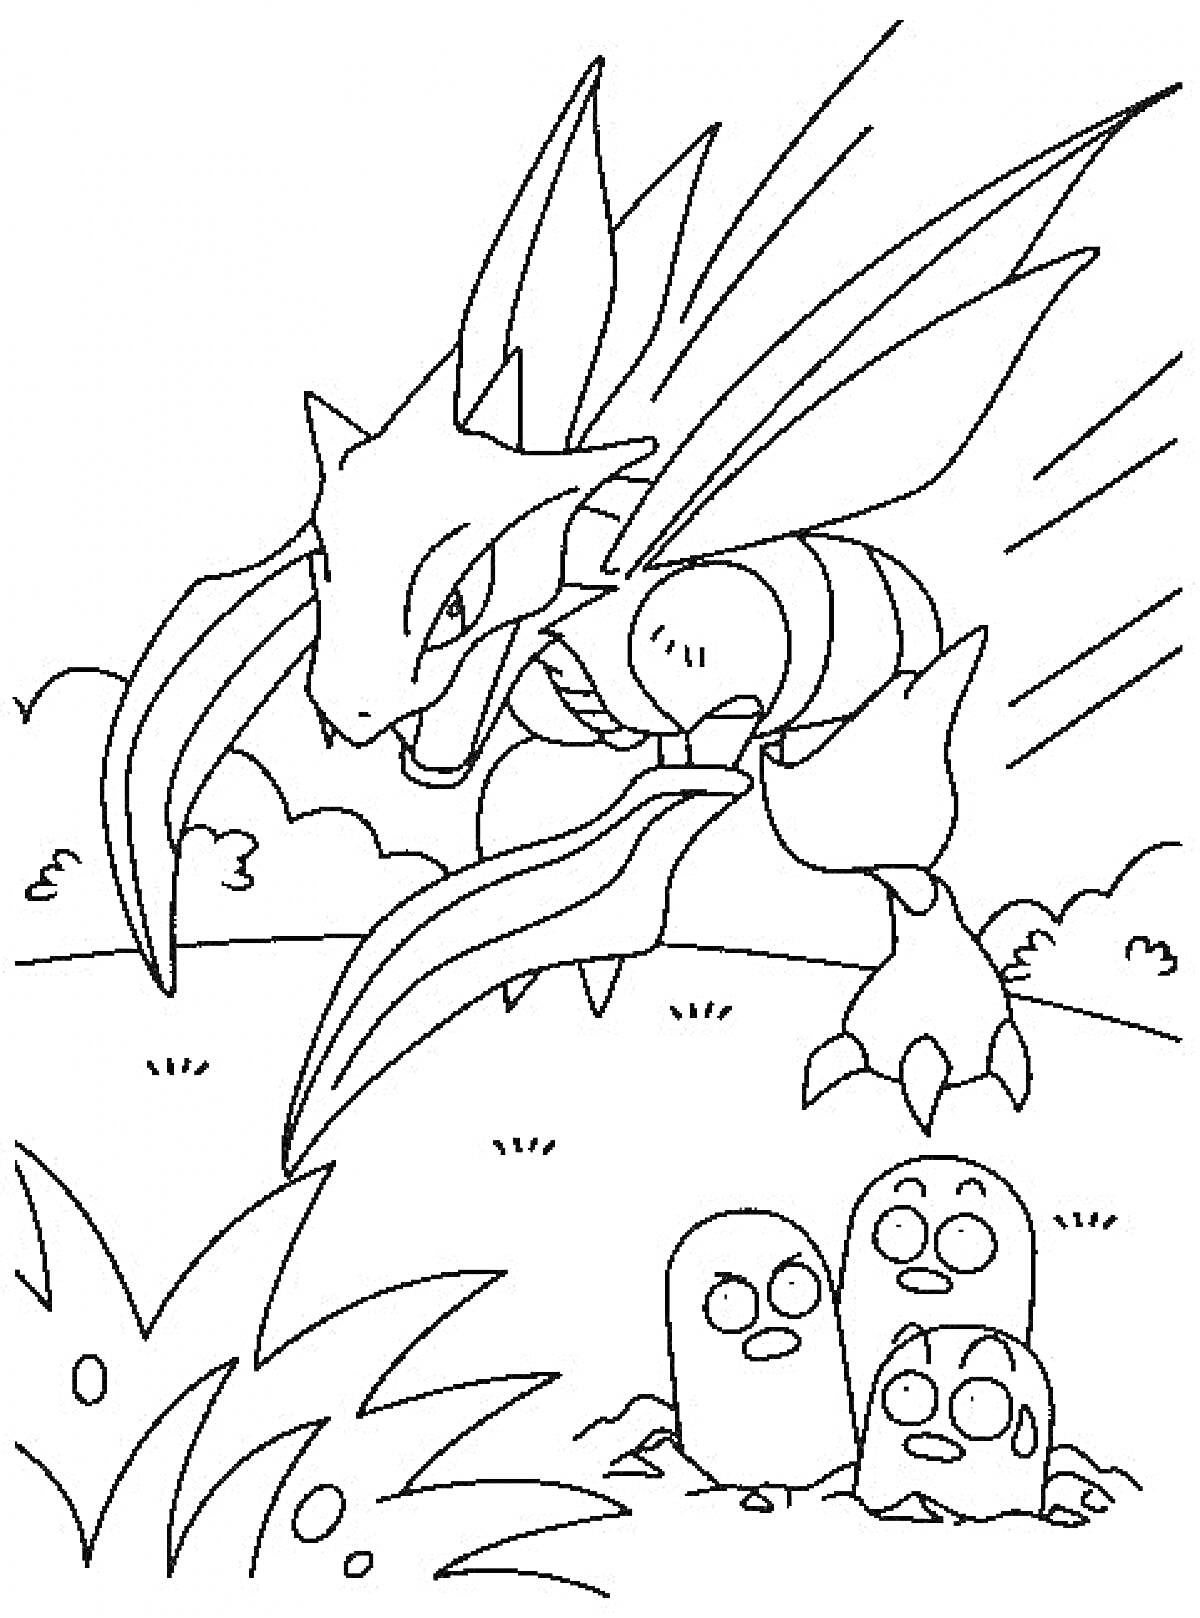 Сцена с Покемонами Сайтер и Диглетт на фоне природы